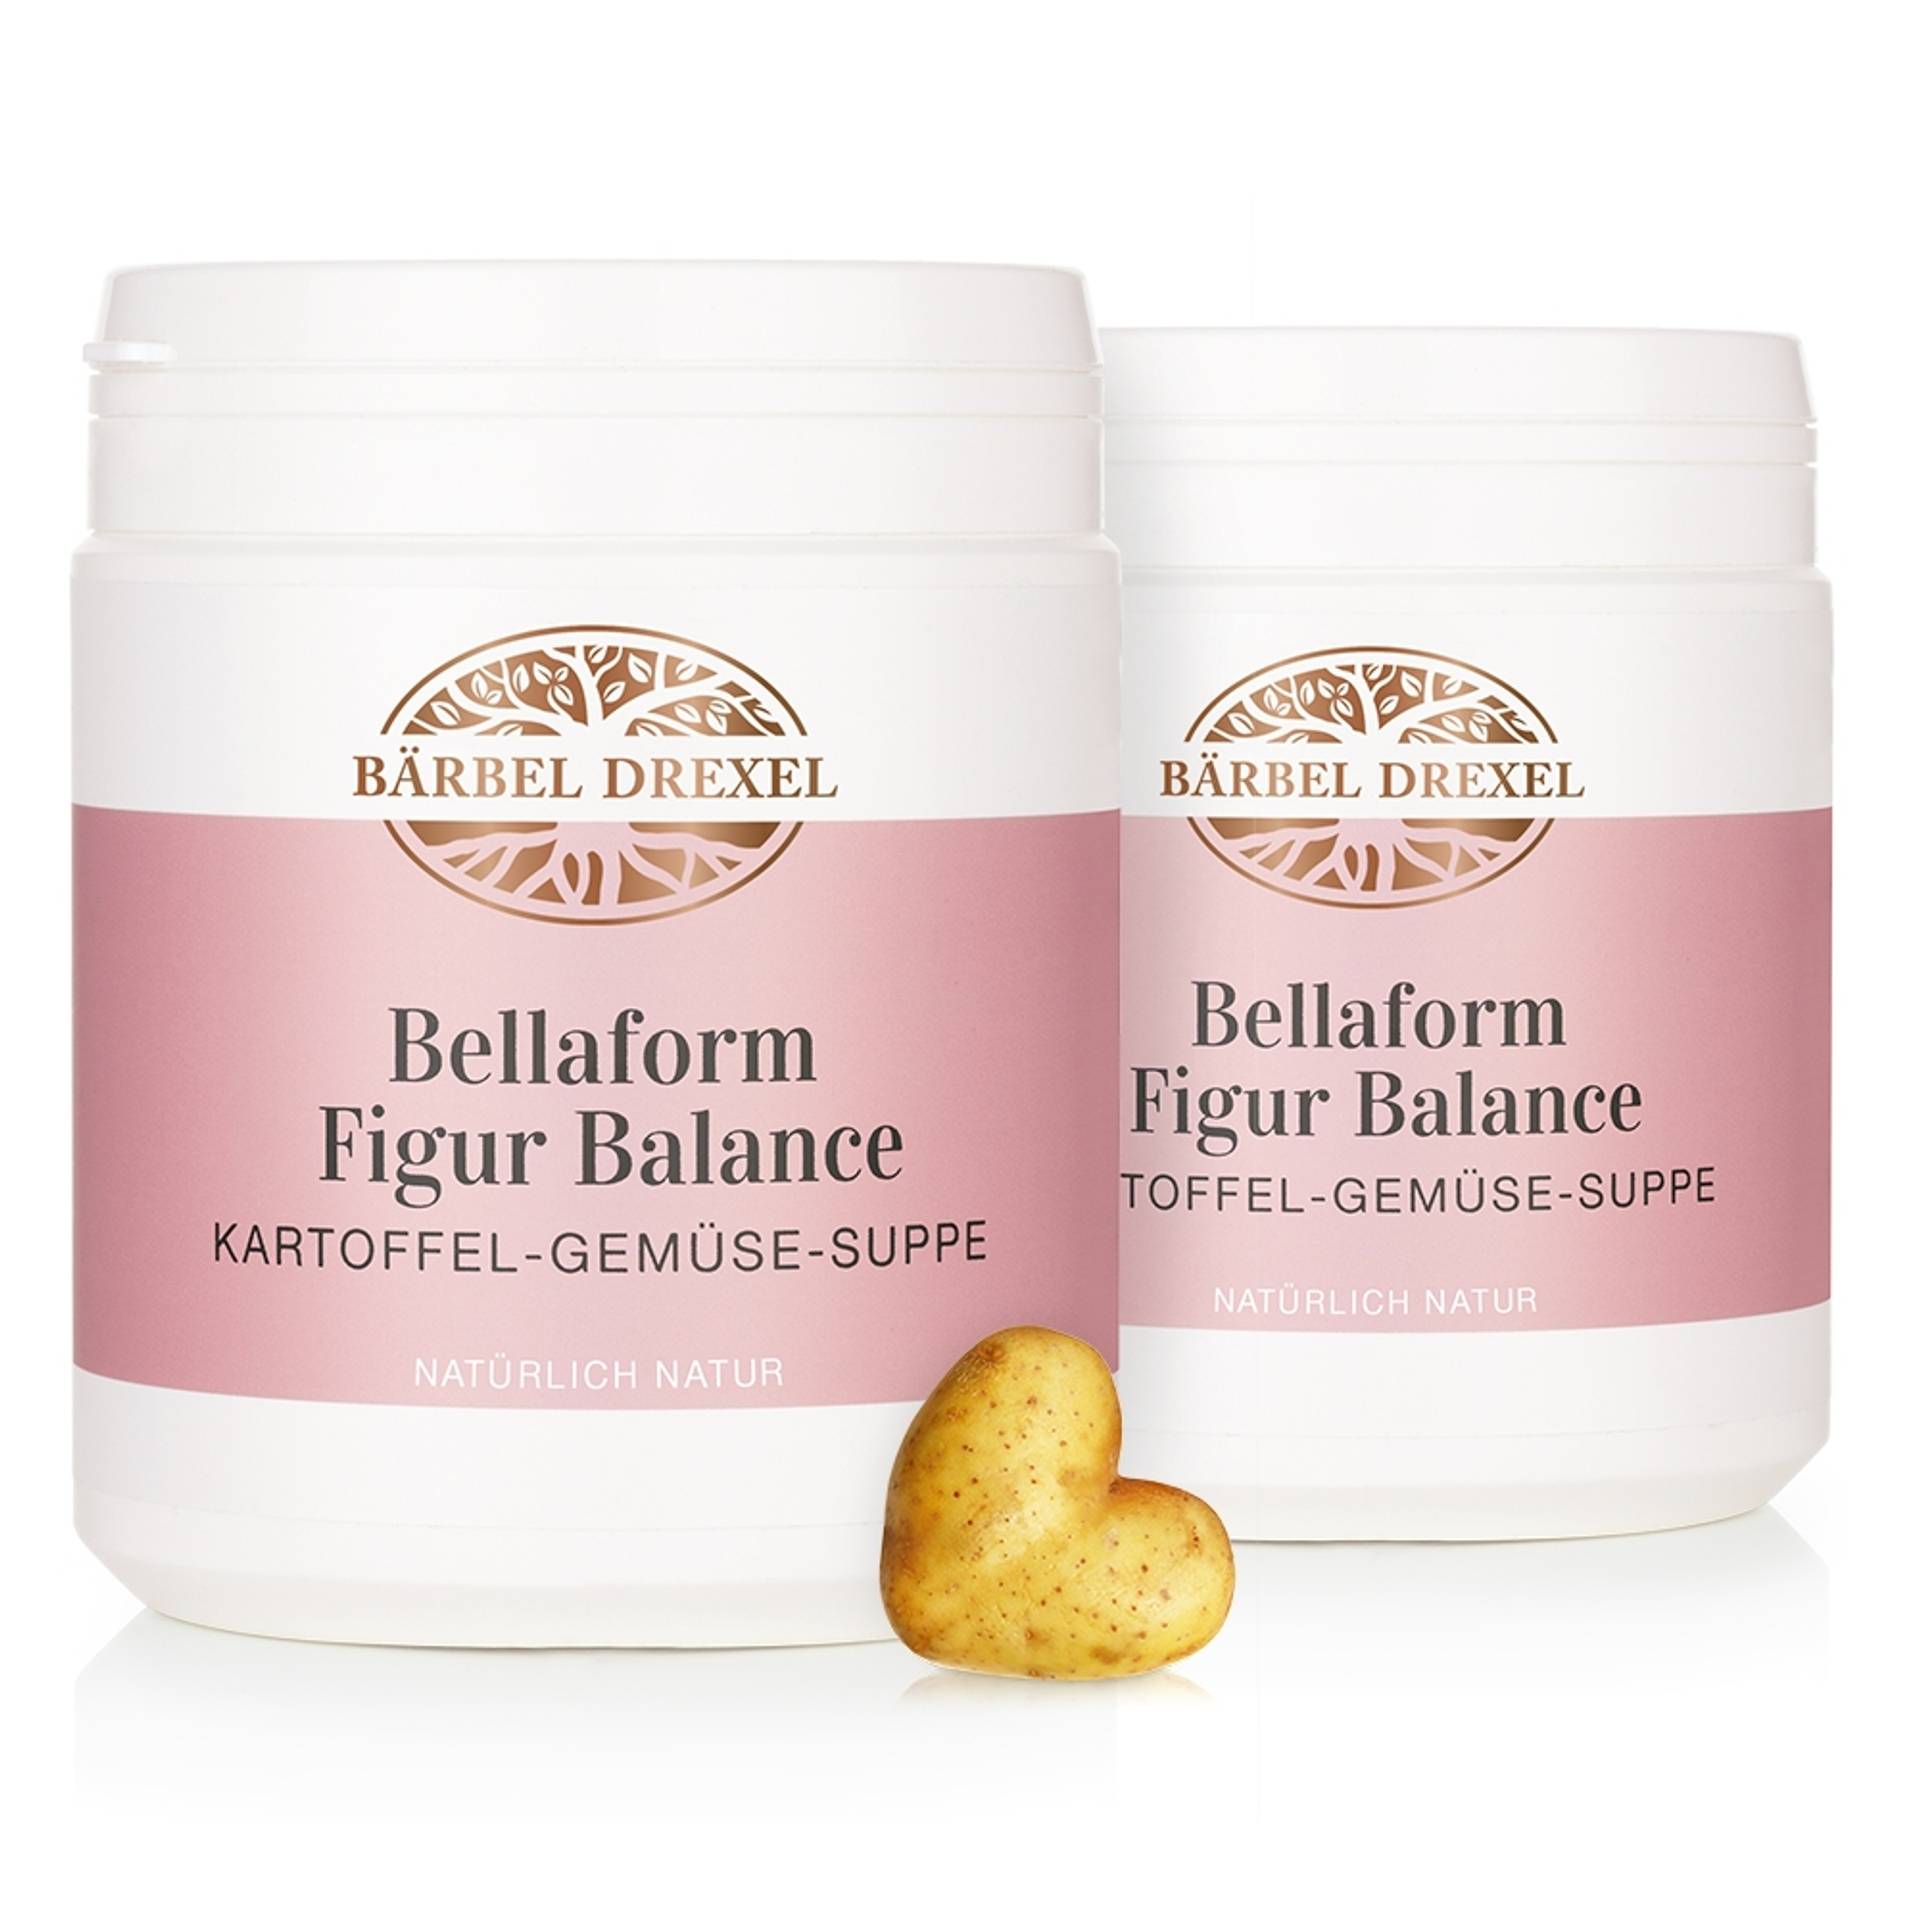 Bellaform Figur Balance "Kartoffel - Gemüse - Suppe"